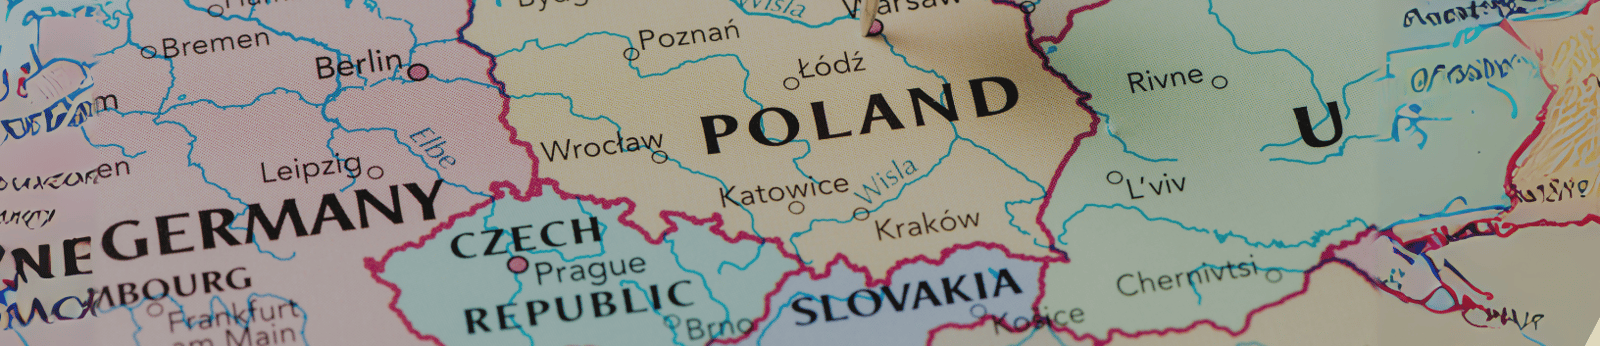 Poland cover-1